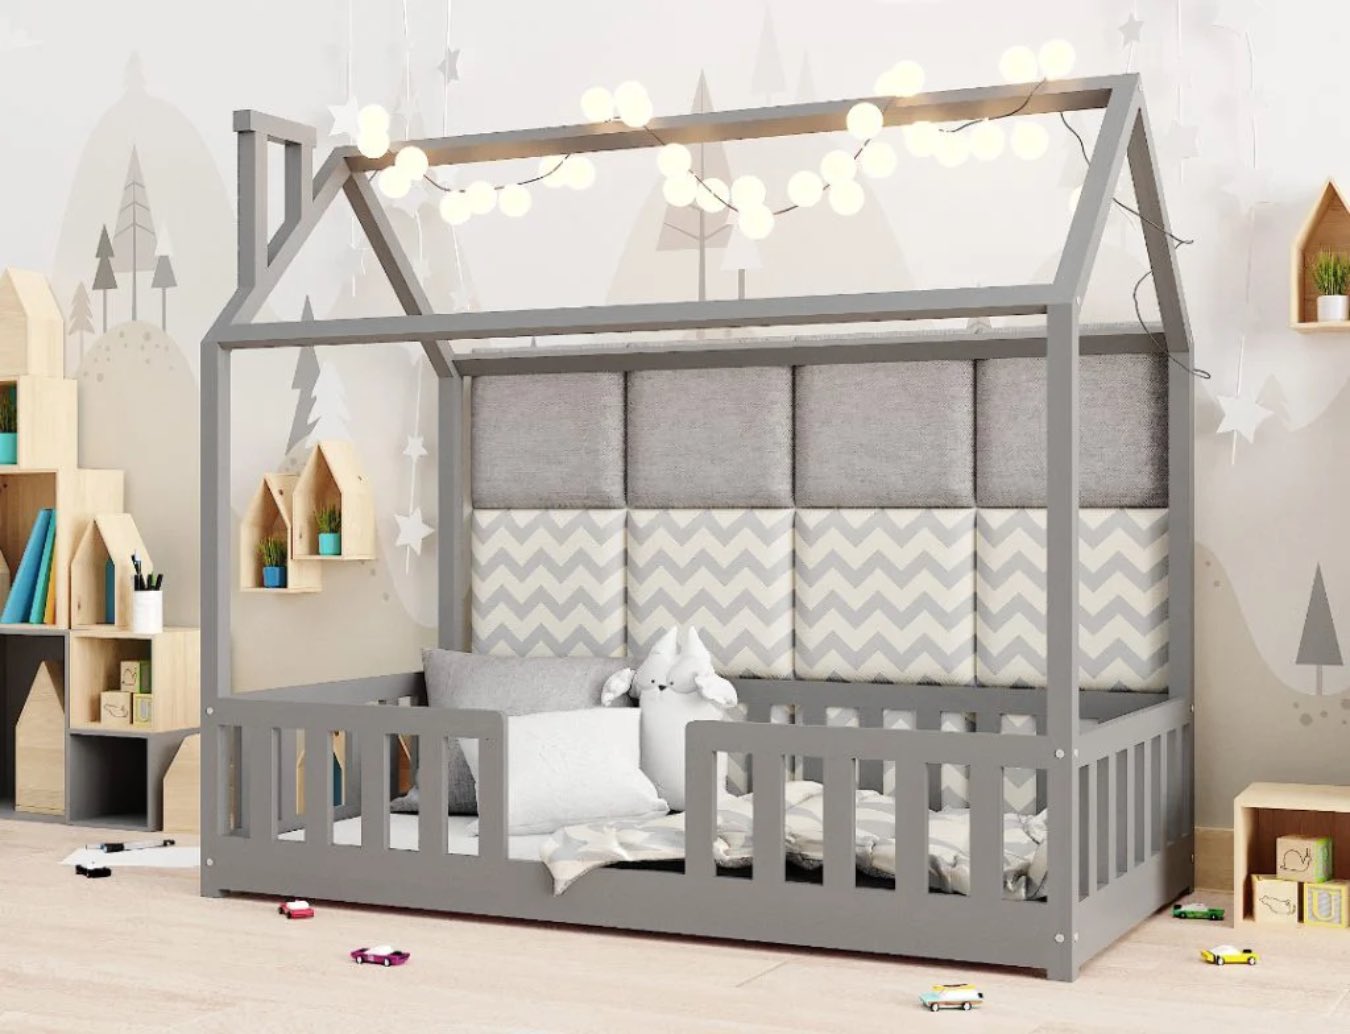 Dziecięce łóżka w kształcie domków, czyli jak skutecznie połączyć wypoczynek z kreatywną zabawą